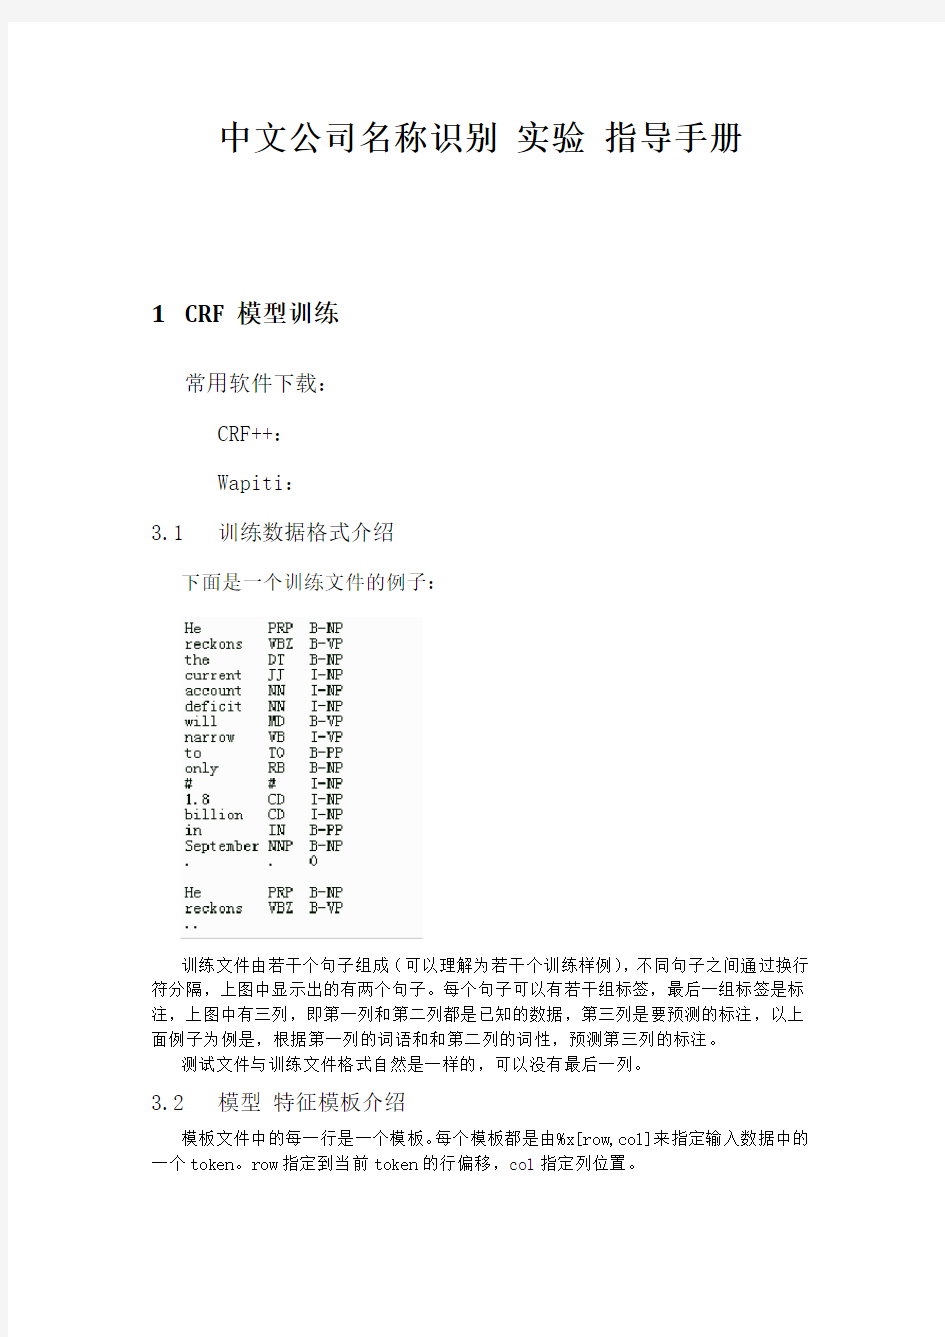 中文公司名称识别实验指导手册